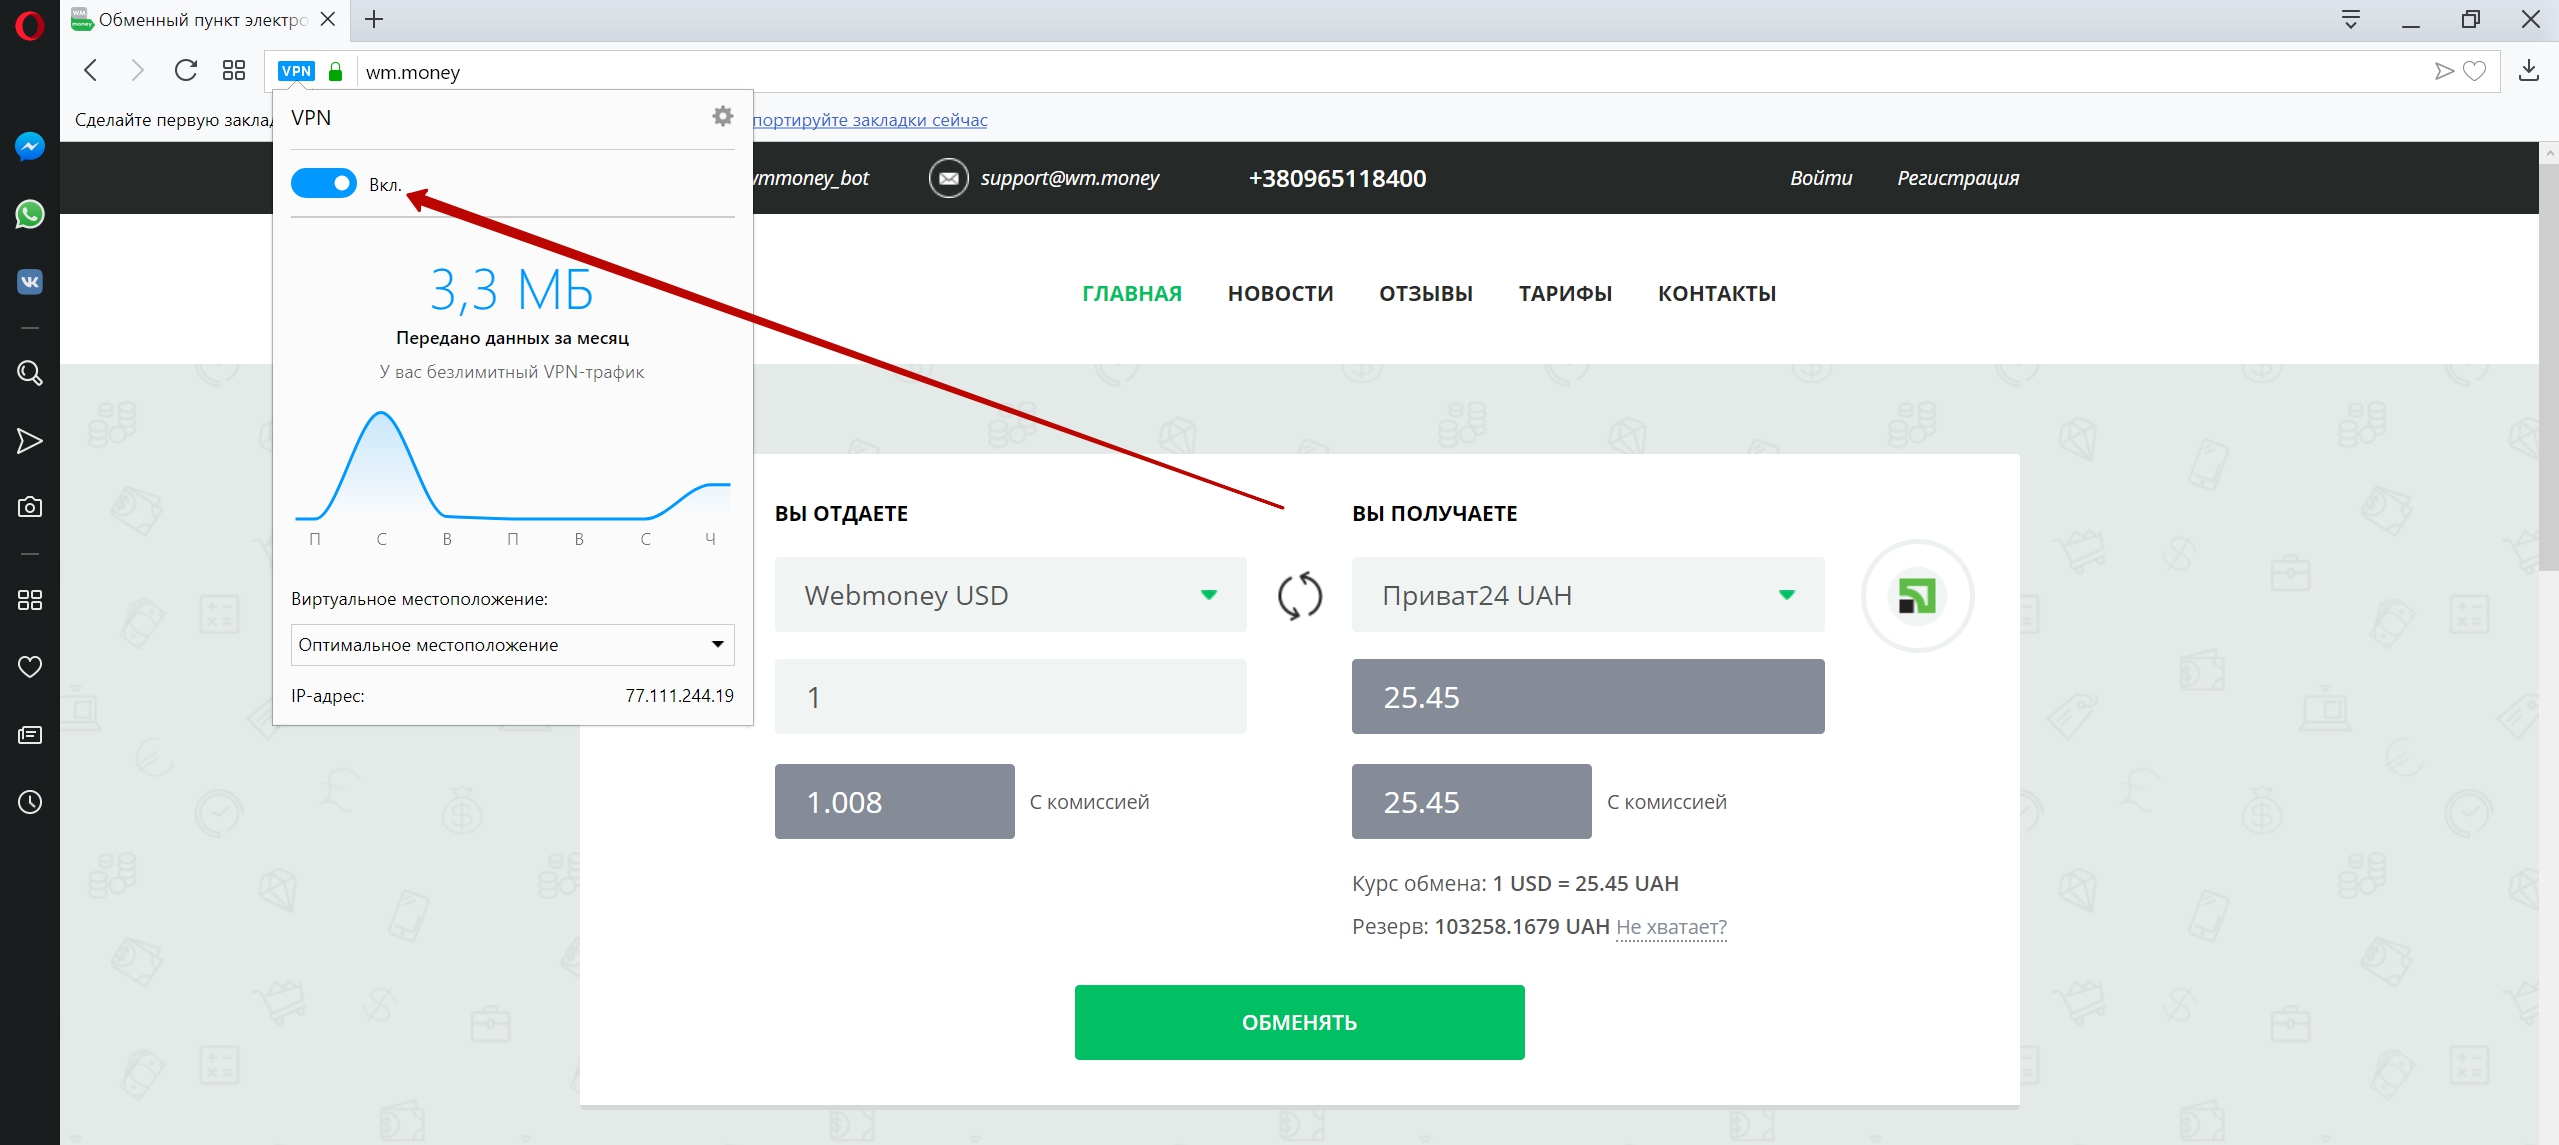 Как снимать деньги с вебмани в украине майнинг ltc на nvidia